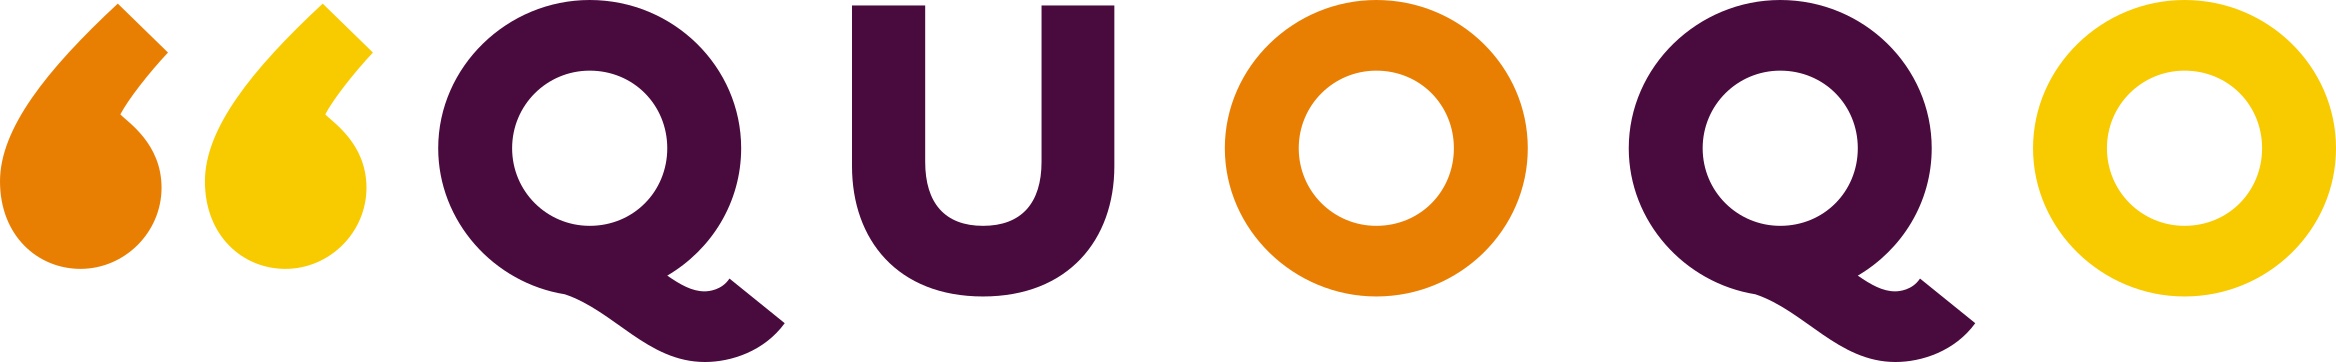 quoqo transparent logo (300dpi)